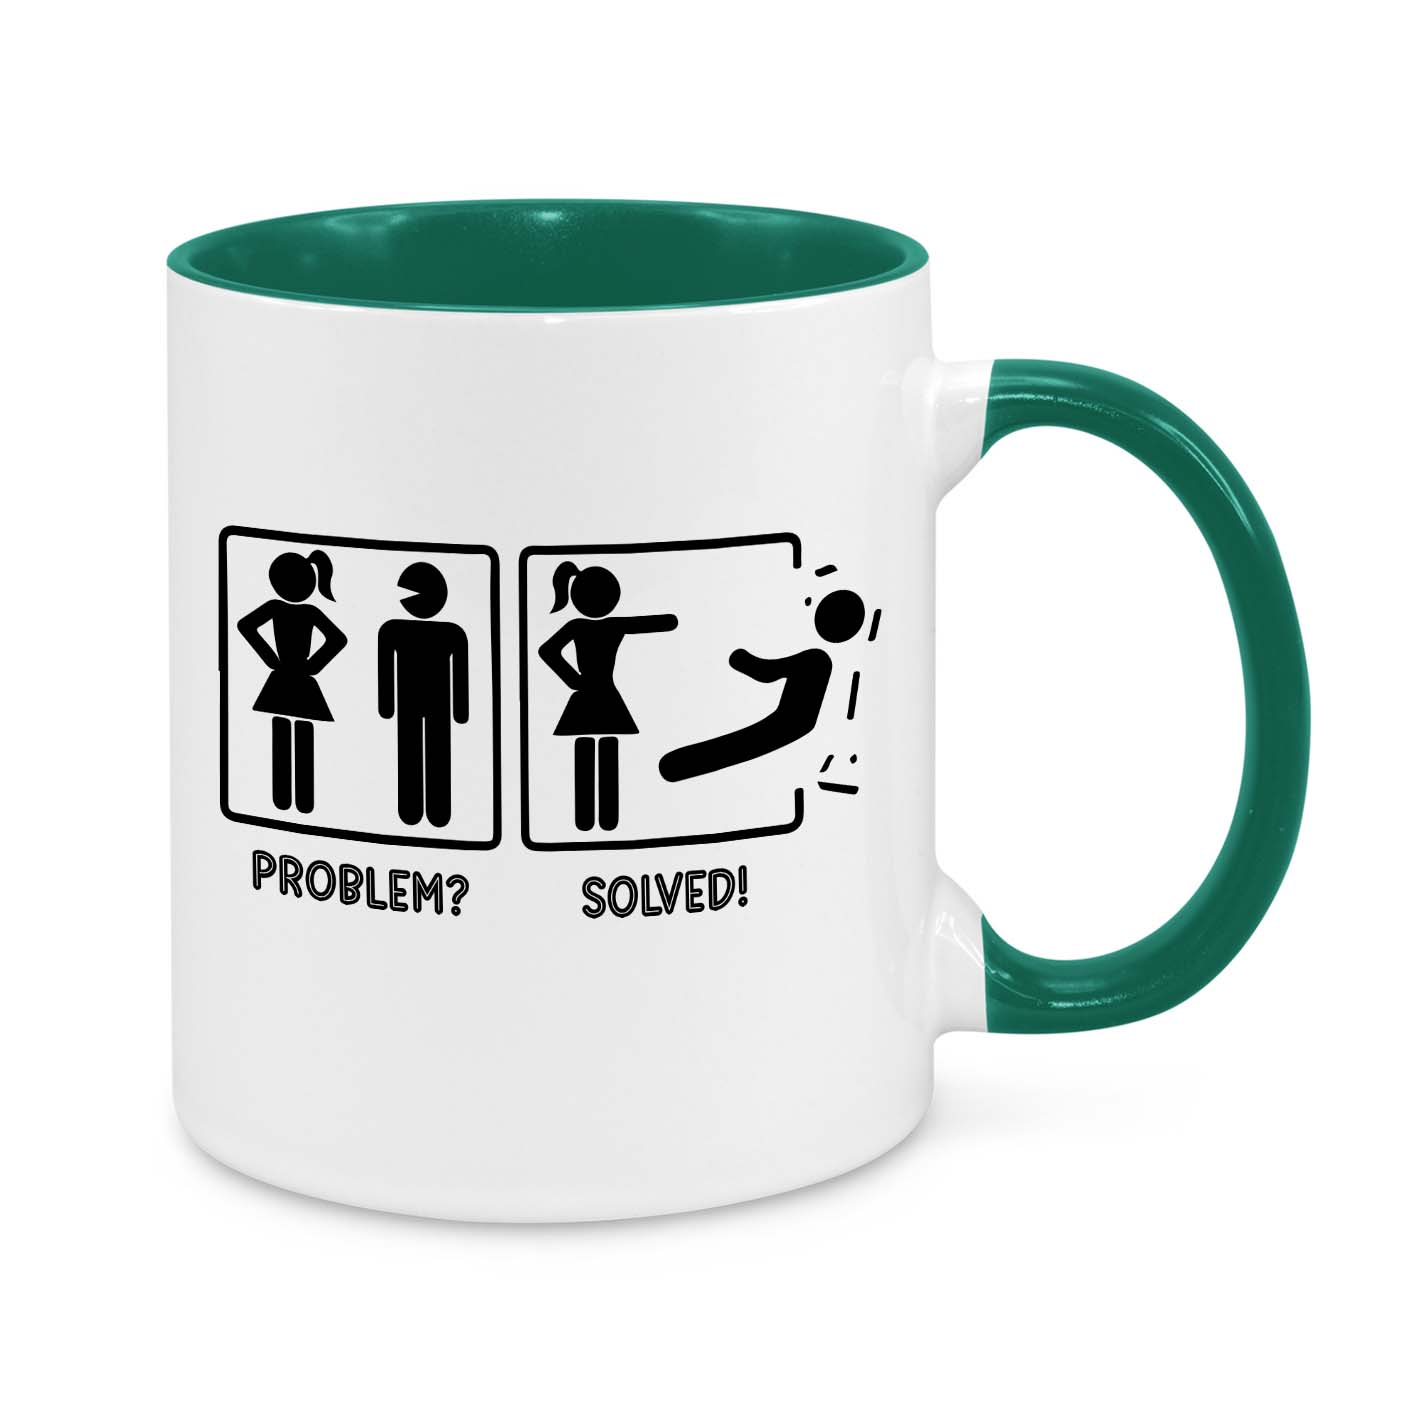 Problem Solved Novelty Mug